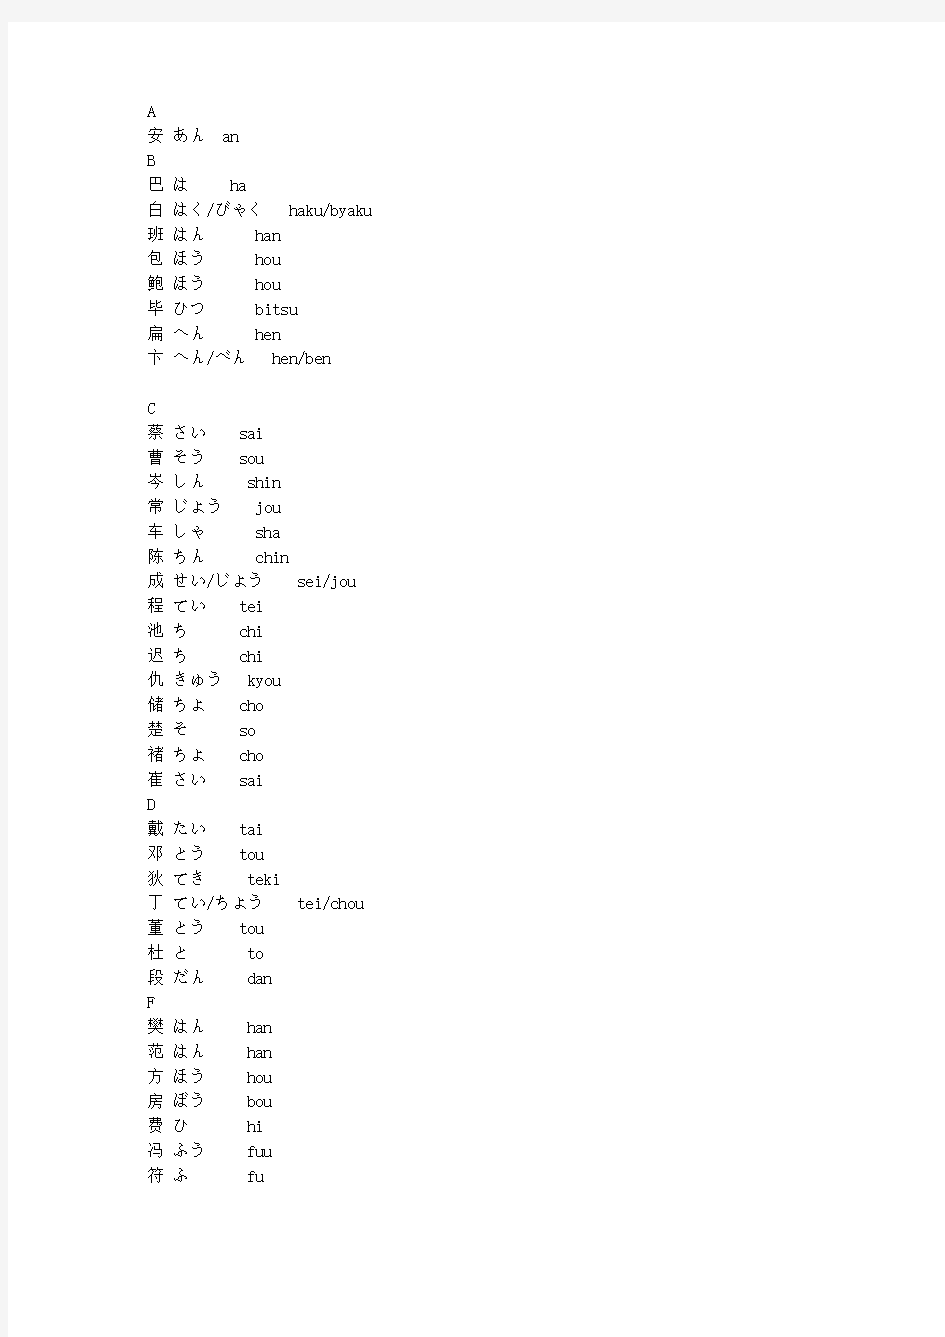 日语中常见中文姓氏的读法